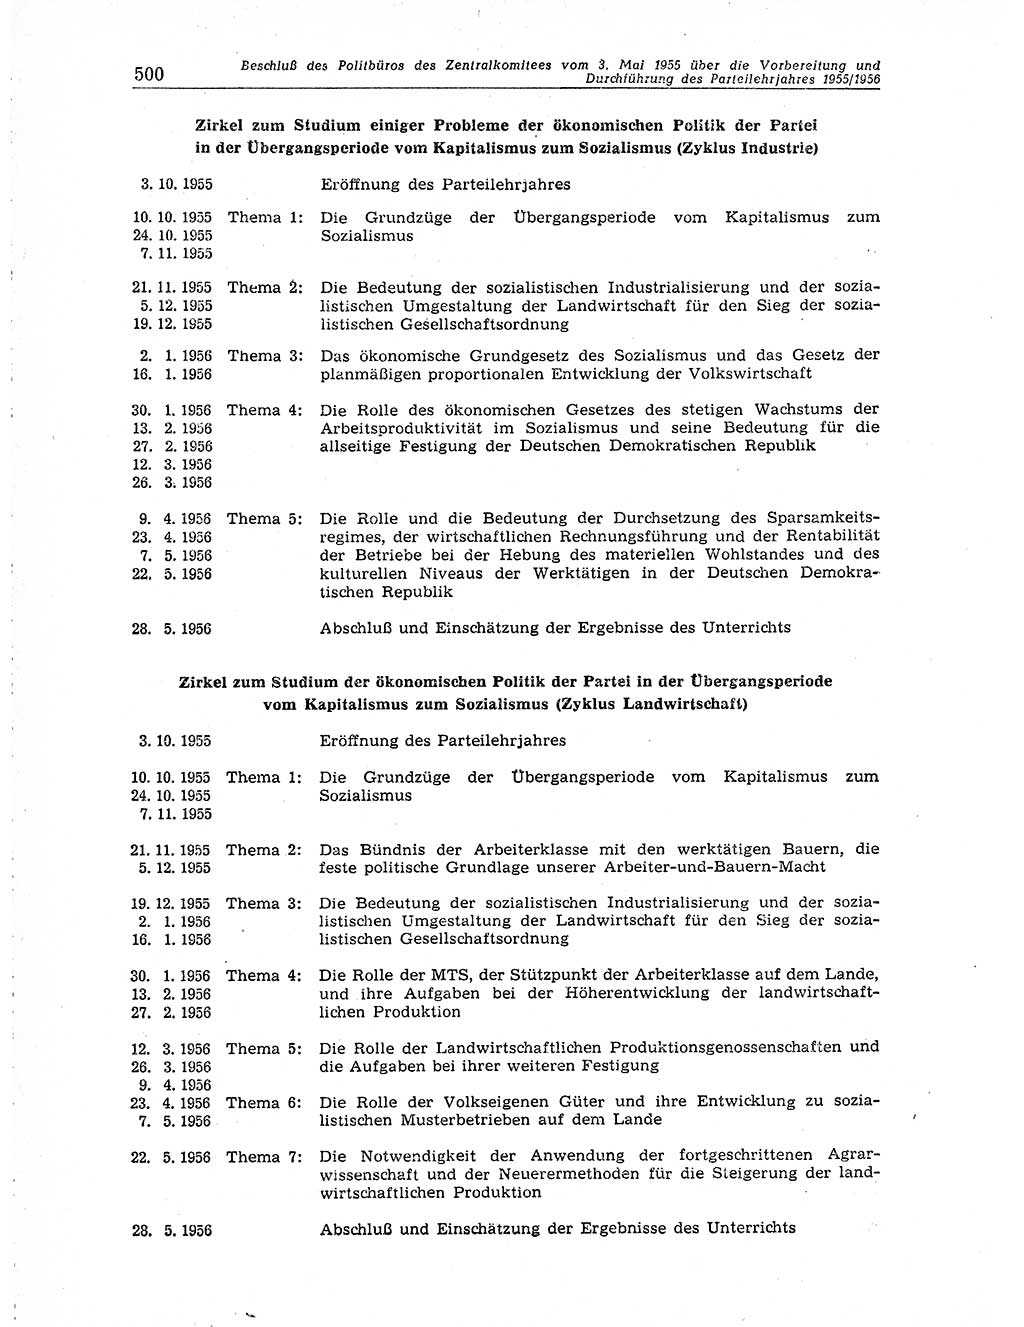 Neuer Weg (NW), Organ des Zentralkomitees (ZK) der SED (Sozialistische Einheitspartei Deutschlands) für Fragen des Parteiaufbaus und des Parteilebens, 10. Jahrgang [Deutsche Demokratische Republik (DDR)] 1955, Seite 500 (NW ZK SED DDR 1955, S. 500)